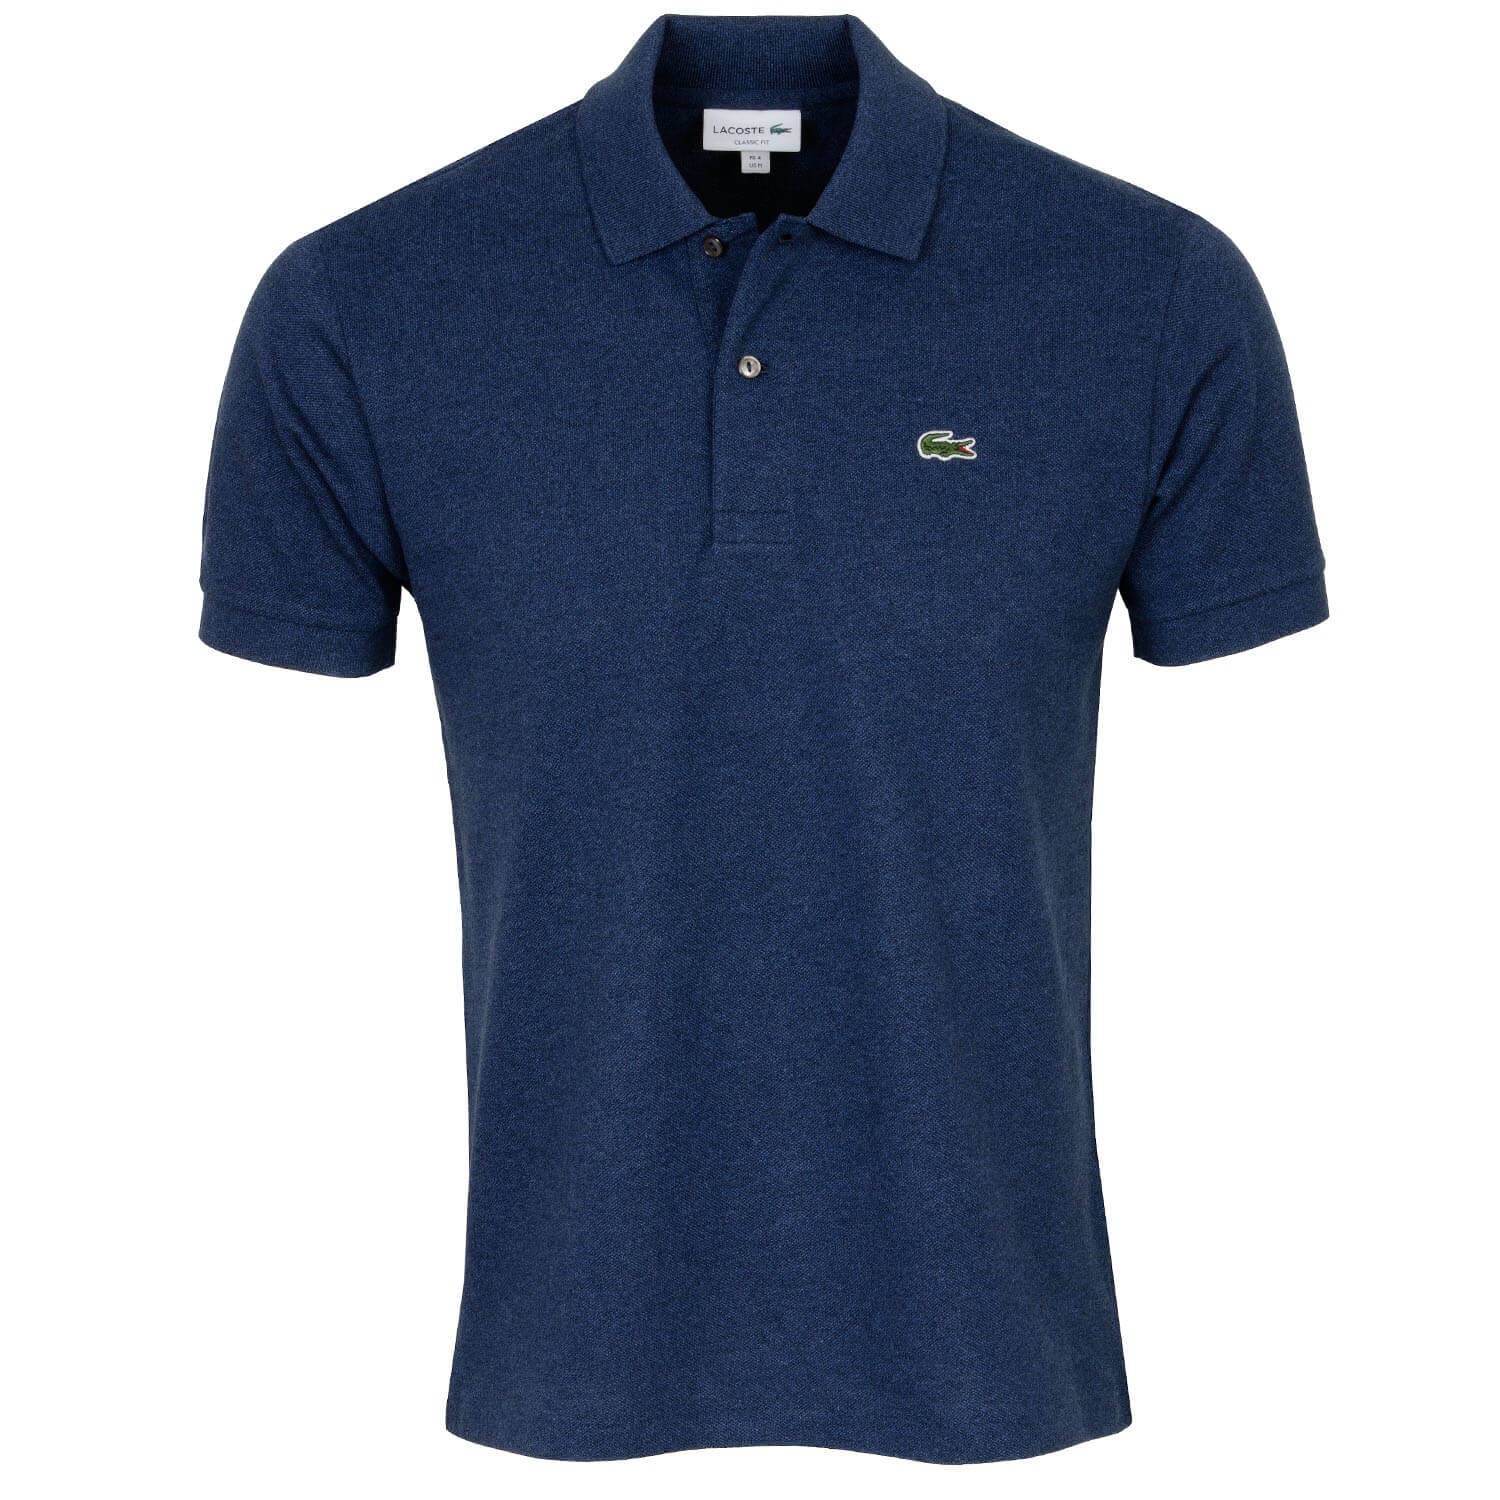 Lacoste Classic Core Polo Shirt